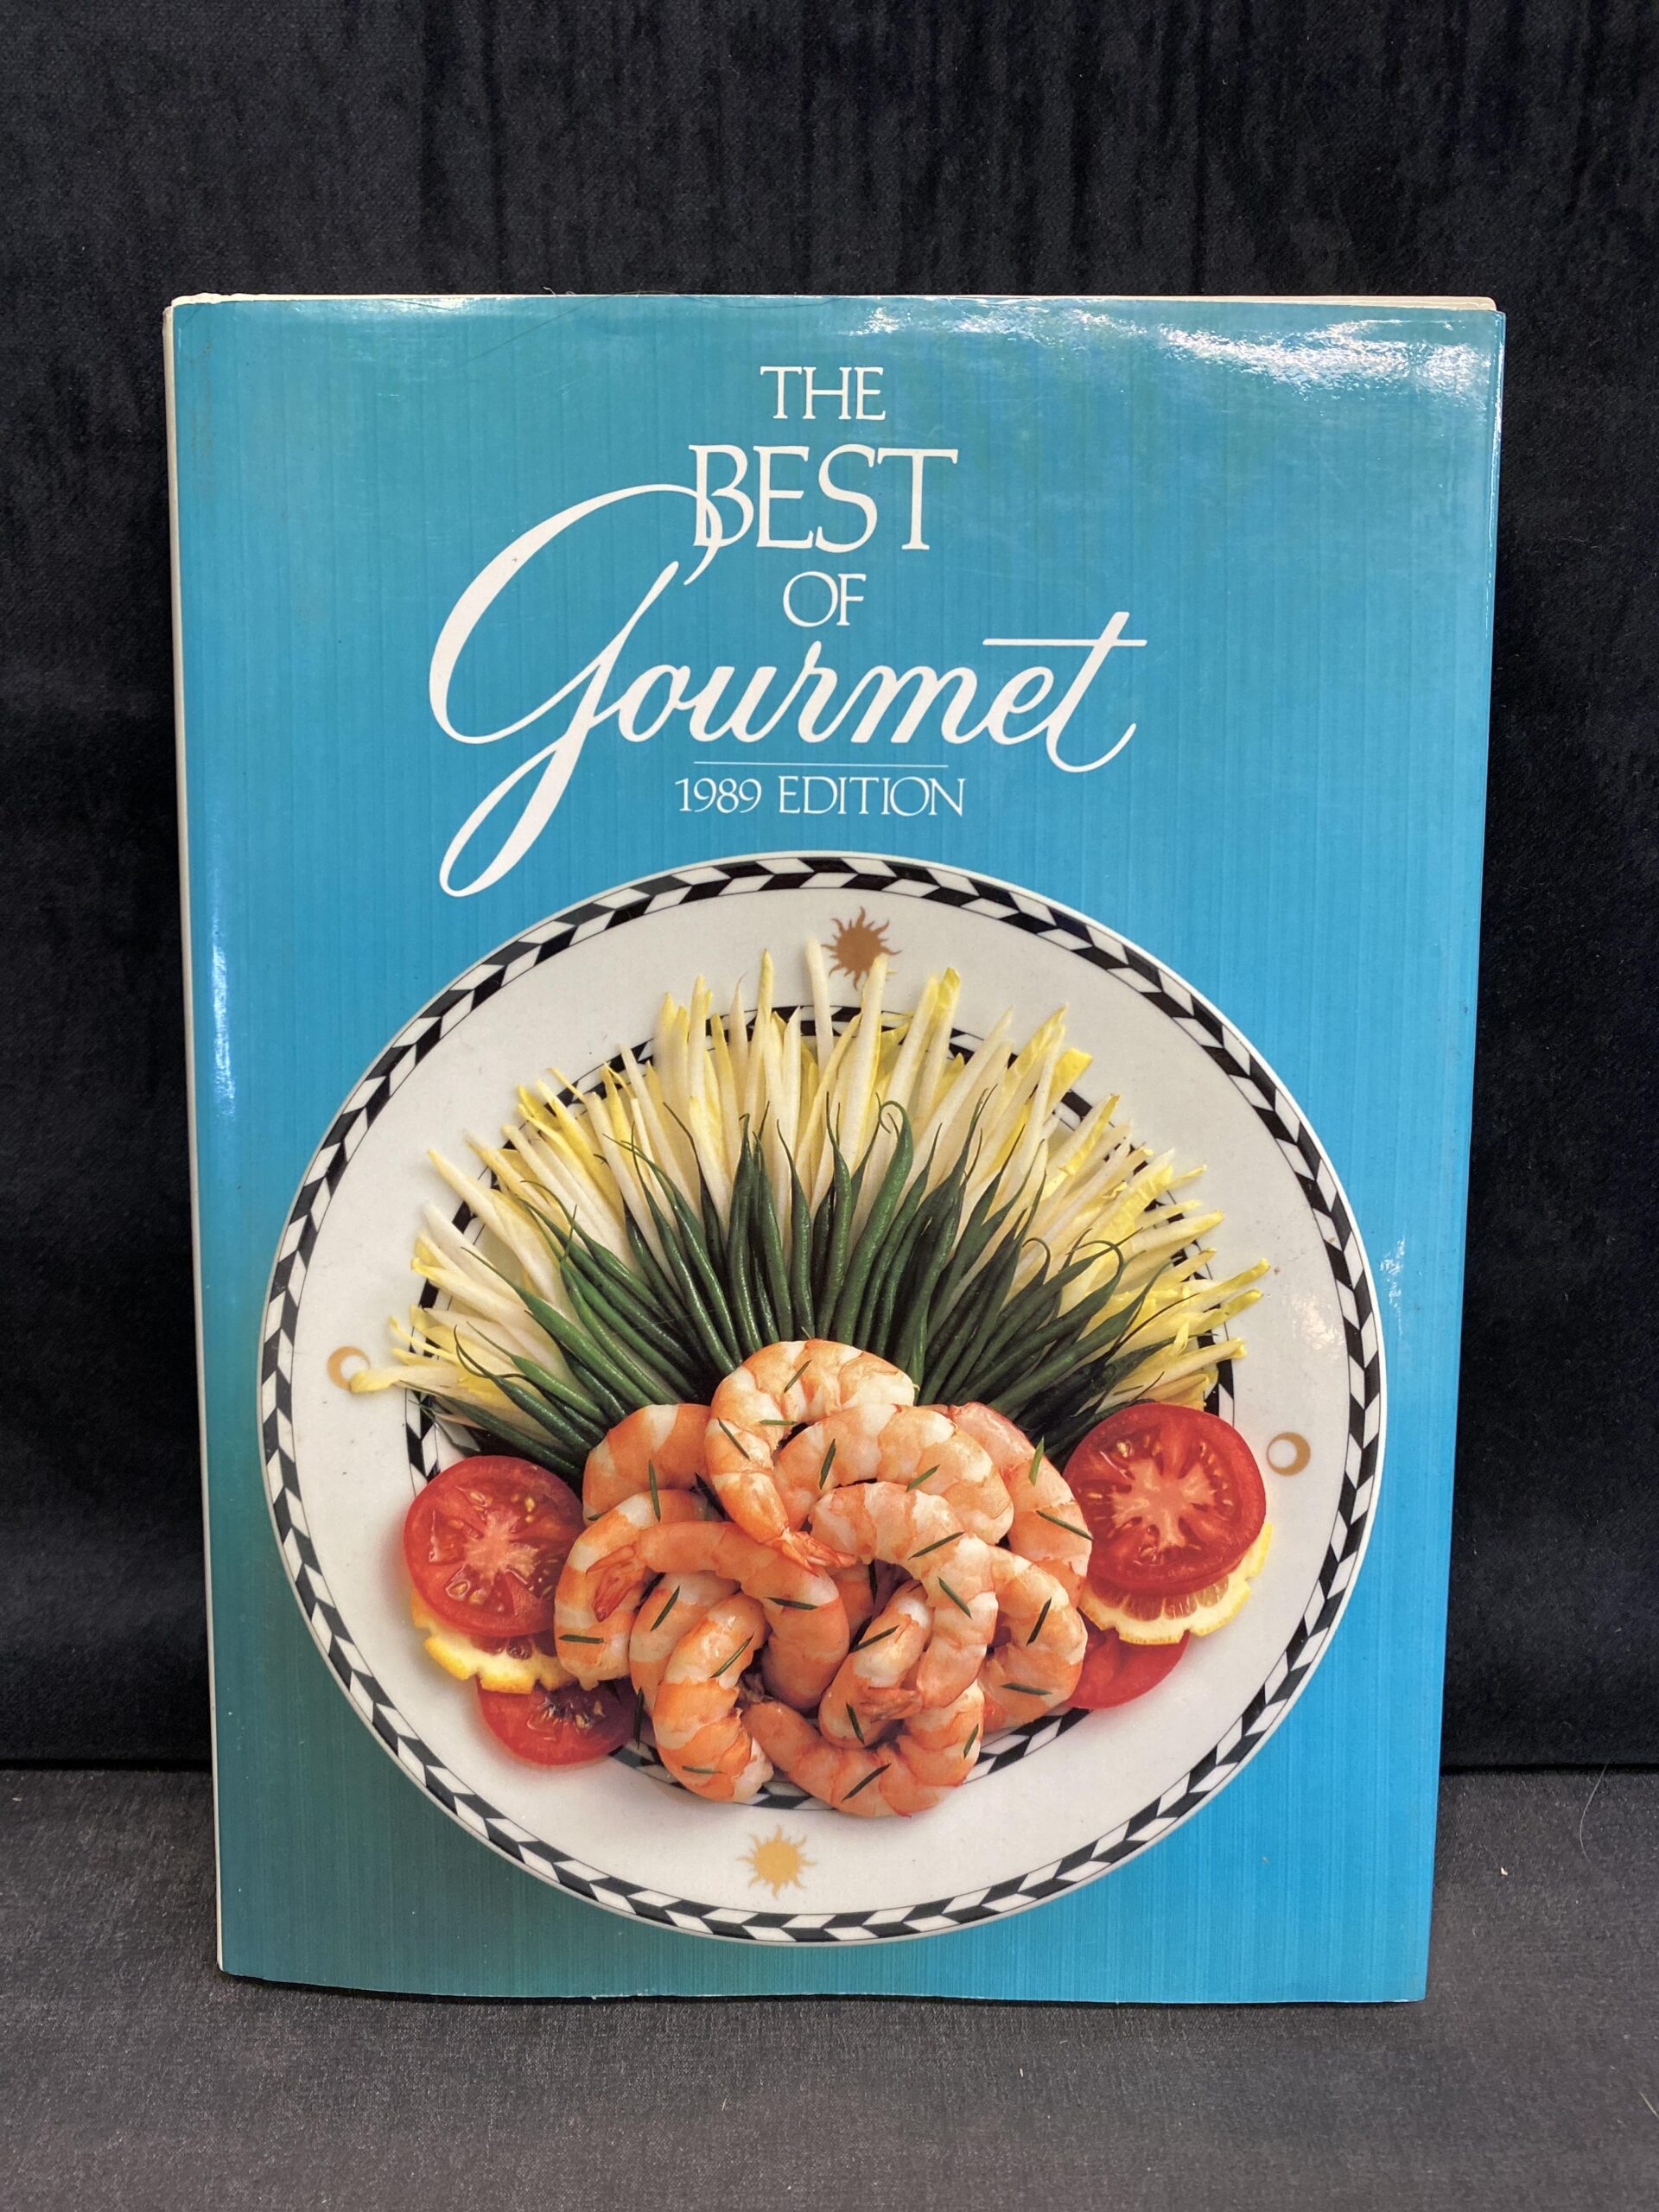 Cookbook – The Best Of Gourmet 1989